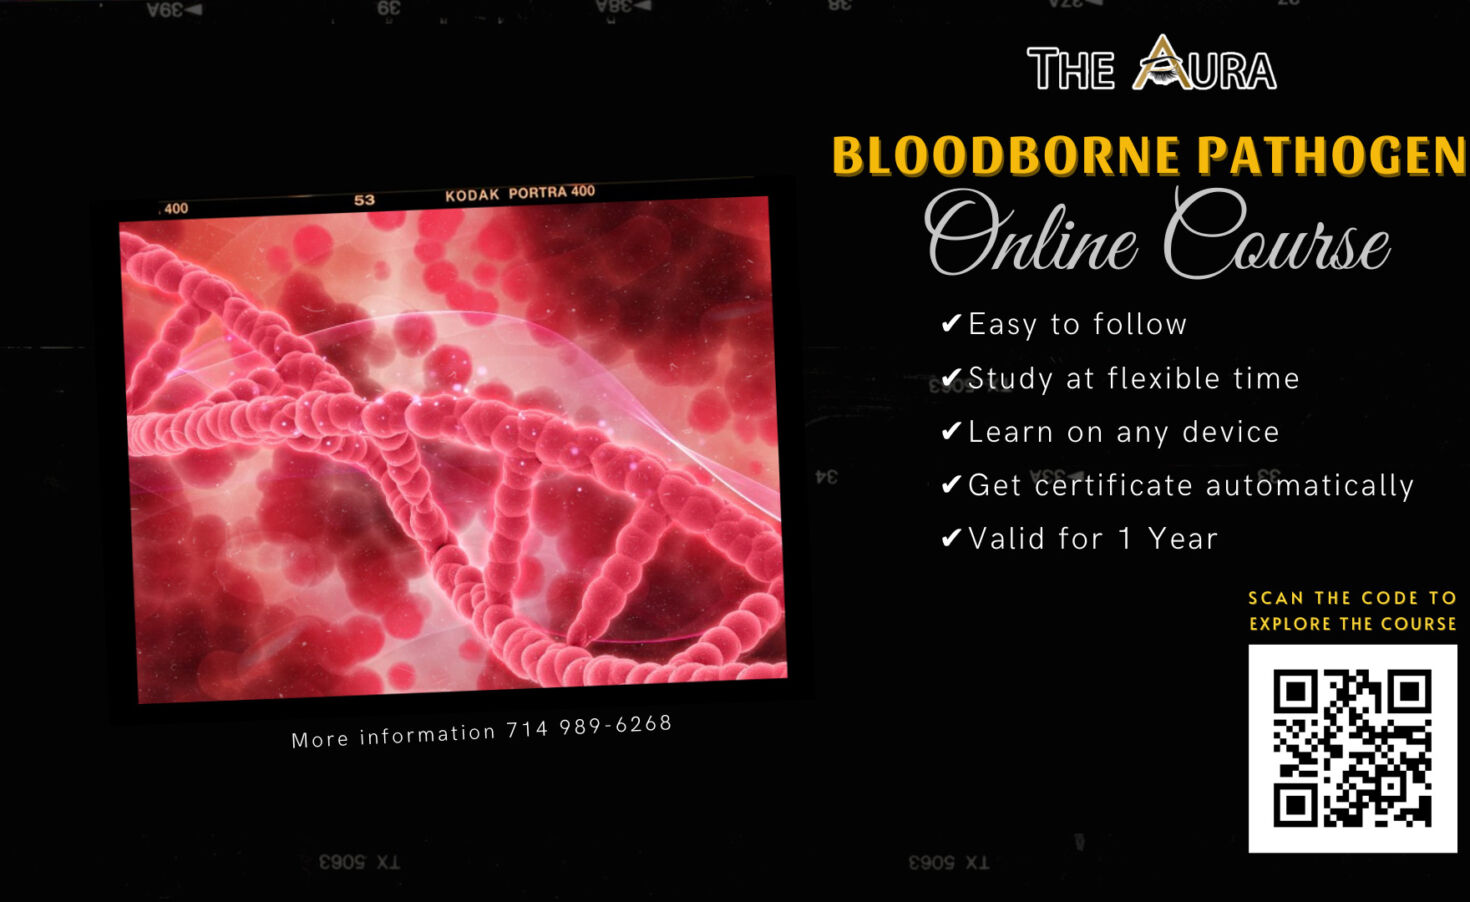 Online Bloodborne Pathogens Course in the US